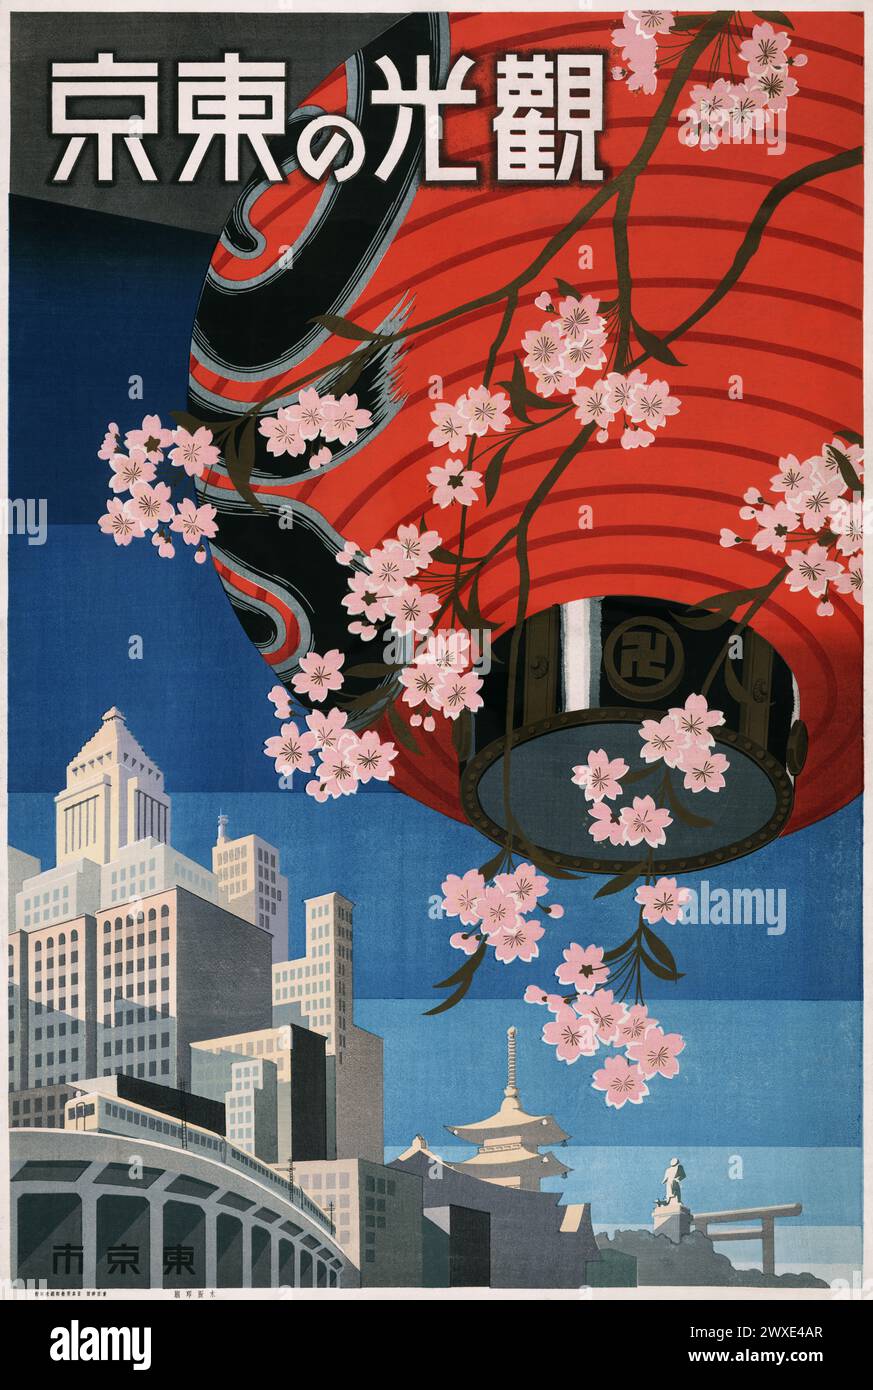 Affiche de voyage pour Tokyo montrant une lanterne en papier avec des cerisiers en fleurs et des bâtiments modernes et traditionnels avec chemin de fer surélevé au loin. 'Venez à Tokyo.' Imprimé à Tokyo, années 1930 Banque D'Images